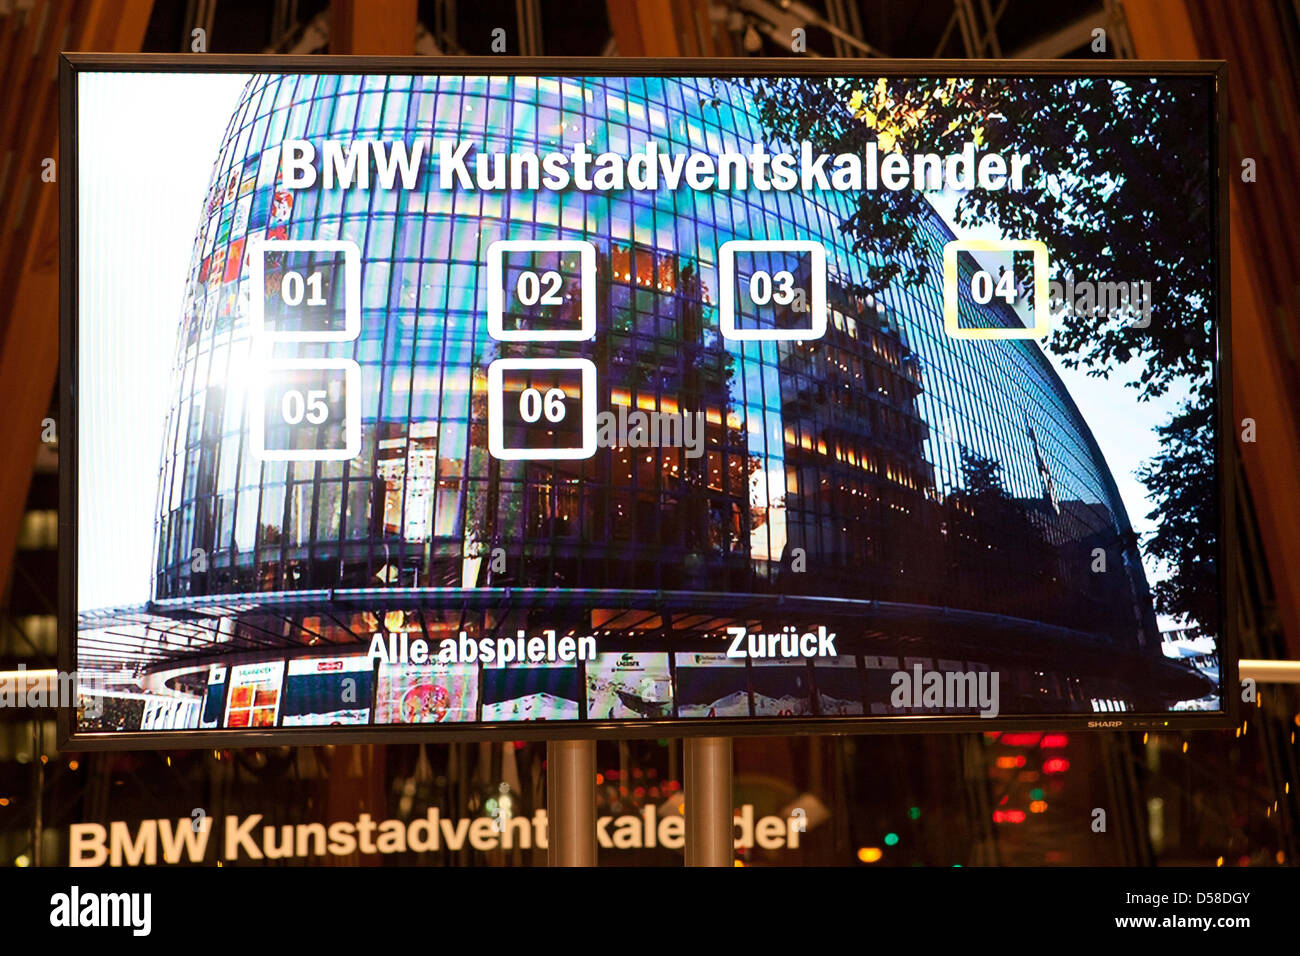 Ambiance à l'ouverture de la fenêtre de la Samsonite Calendrier Calendrier  de l'Avent (BMW) Kunstadventskalender à Weltstadthaus Photo Stock - Alamy